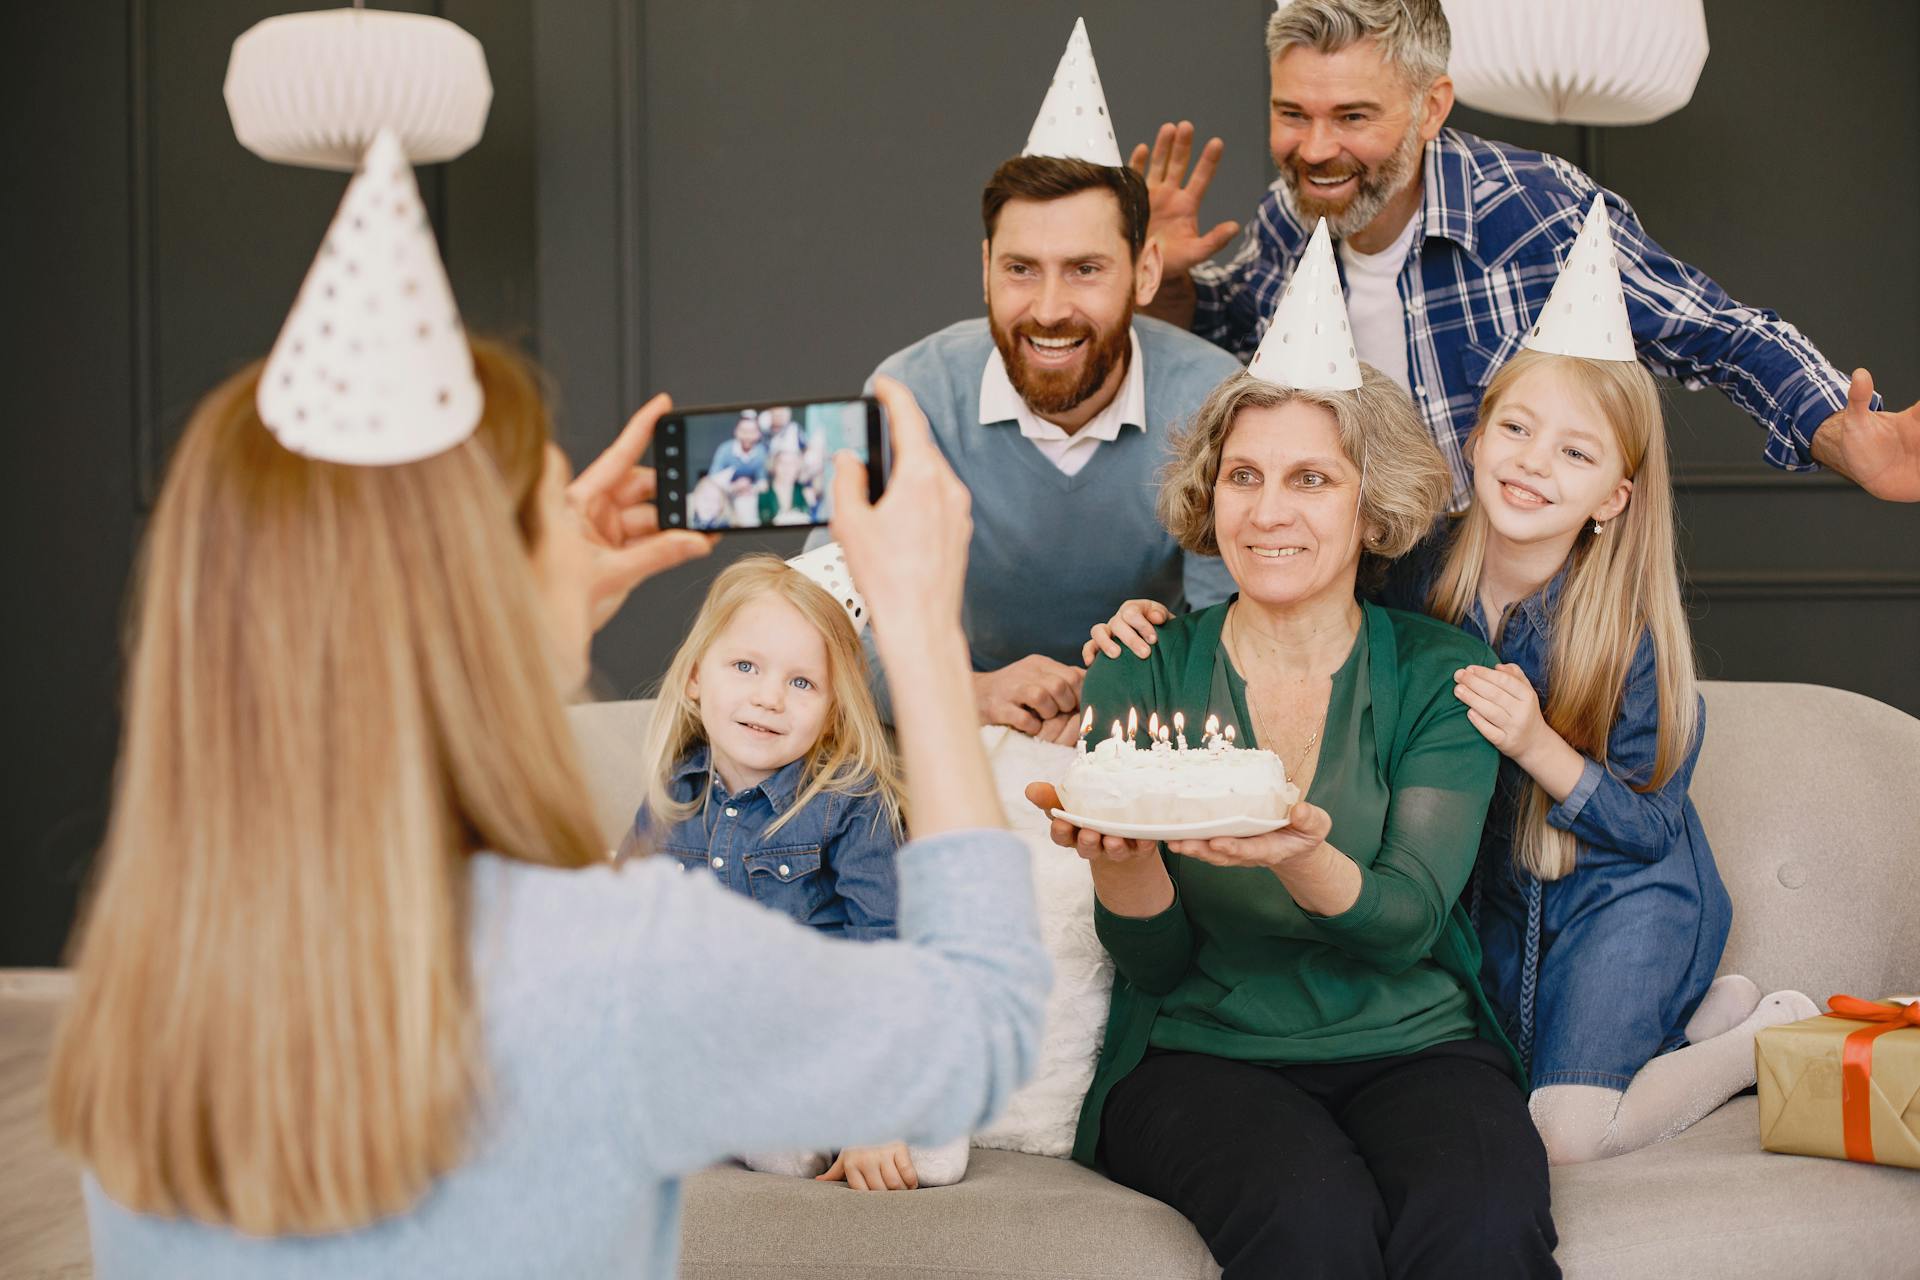 Una mujer fotografiando a su familia en la celebración de un cumpleaños | Fuente: Pexels